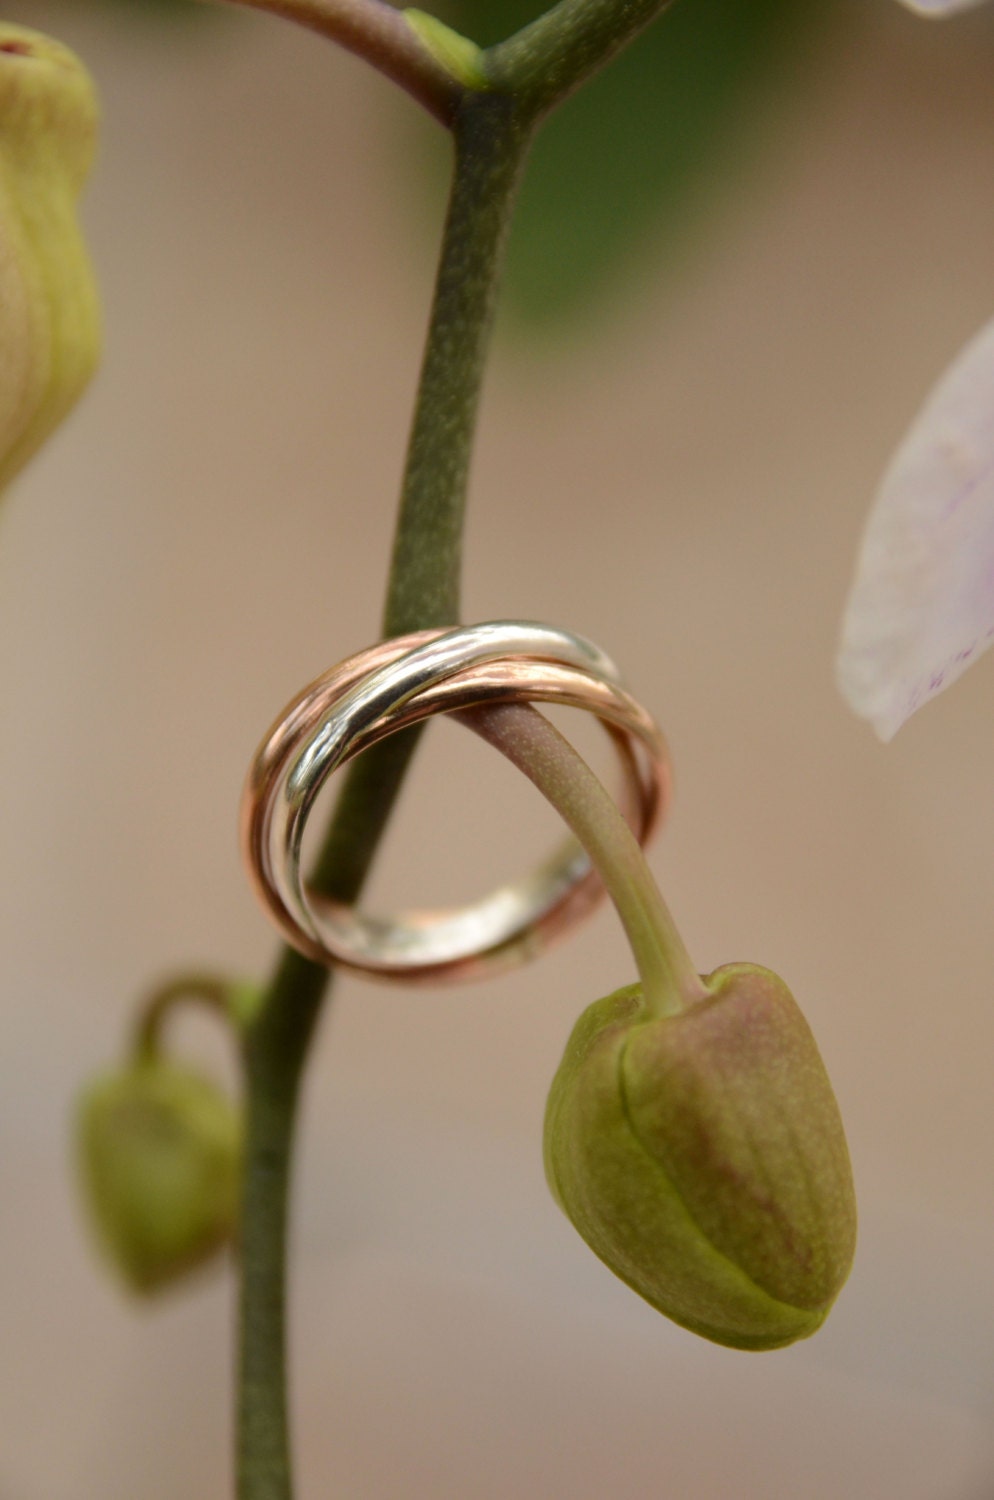 Silver metal wedding rings